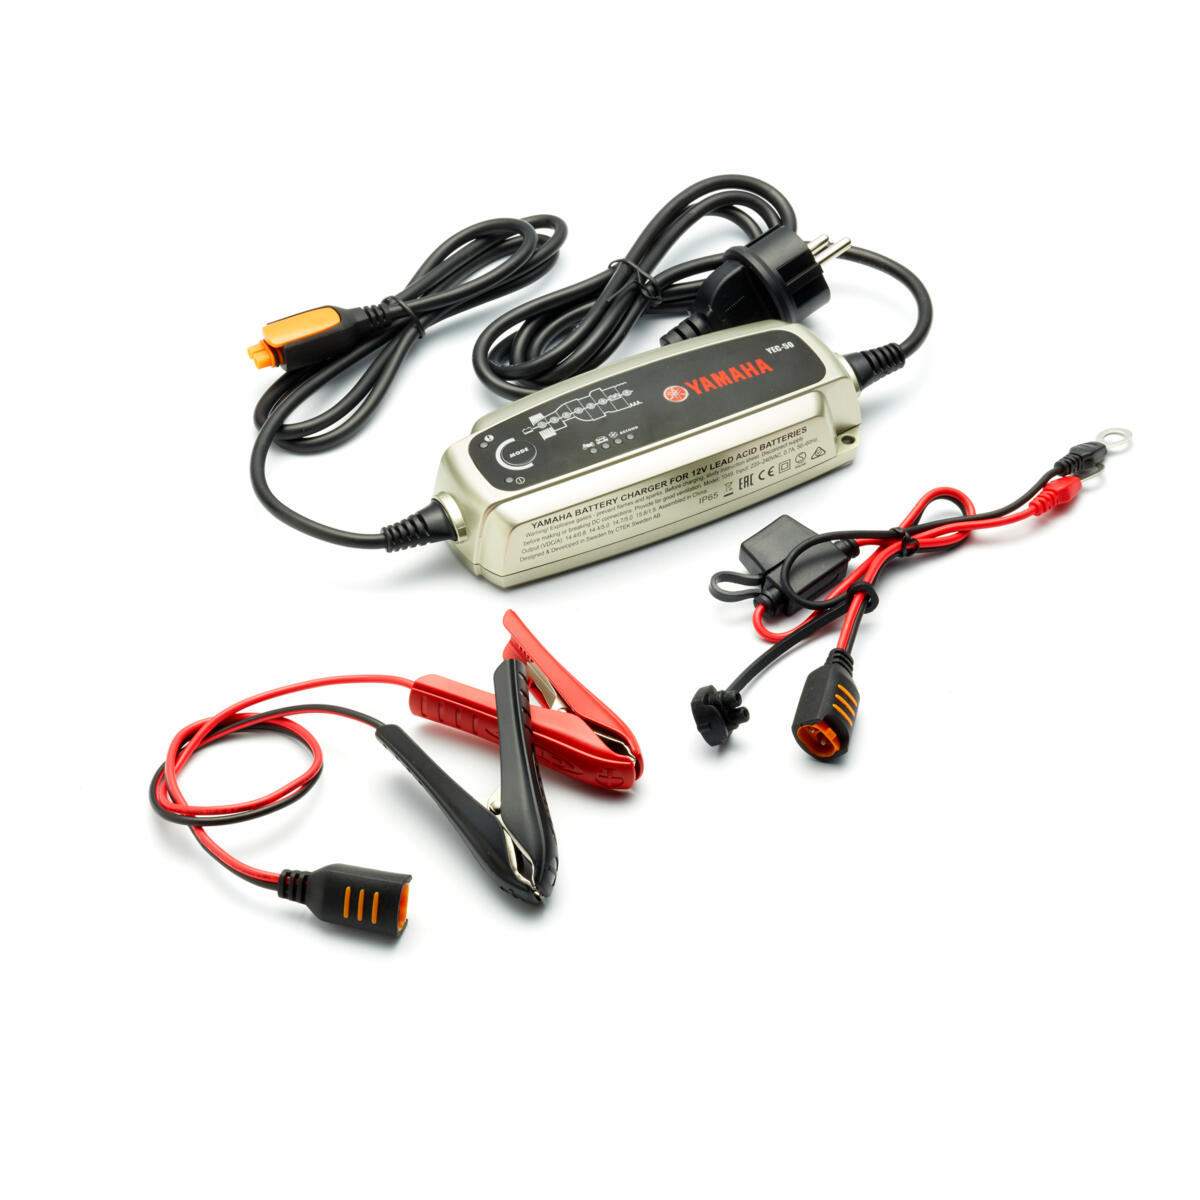 8-trins-oplader, som kan oplade batteriet på din motorcykel, scooter, ATV, SMB og/eller bådmotor fra Yamaha.